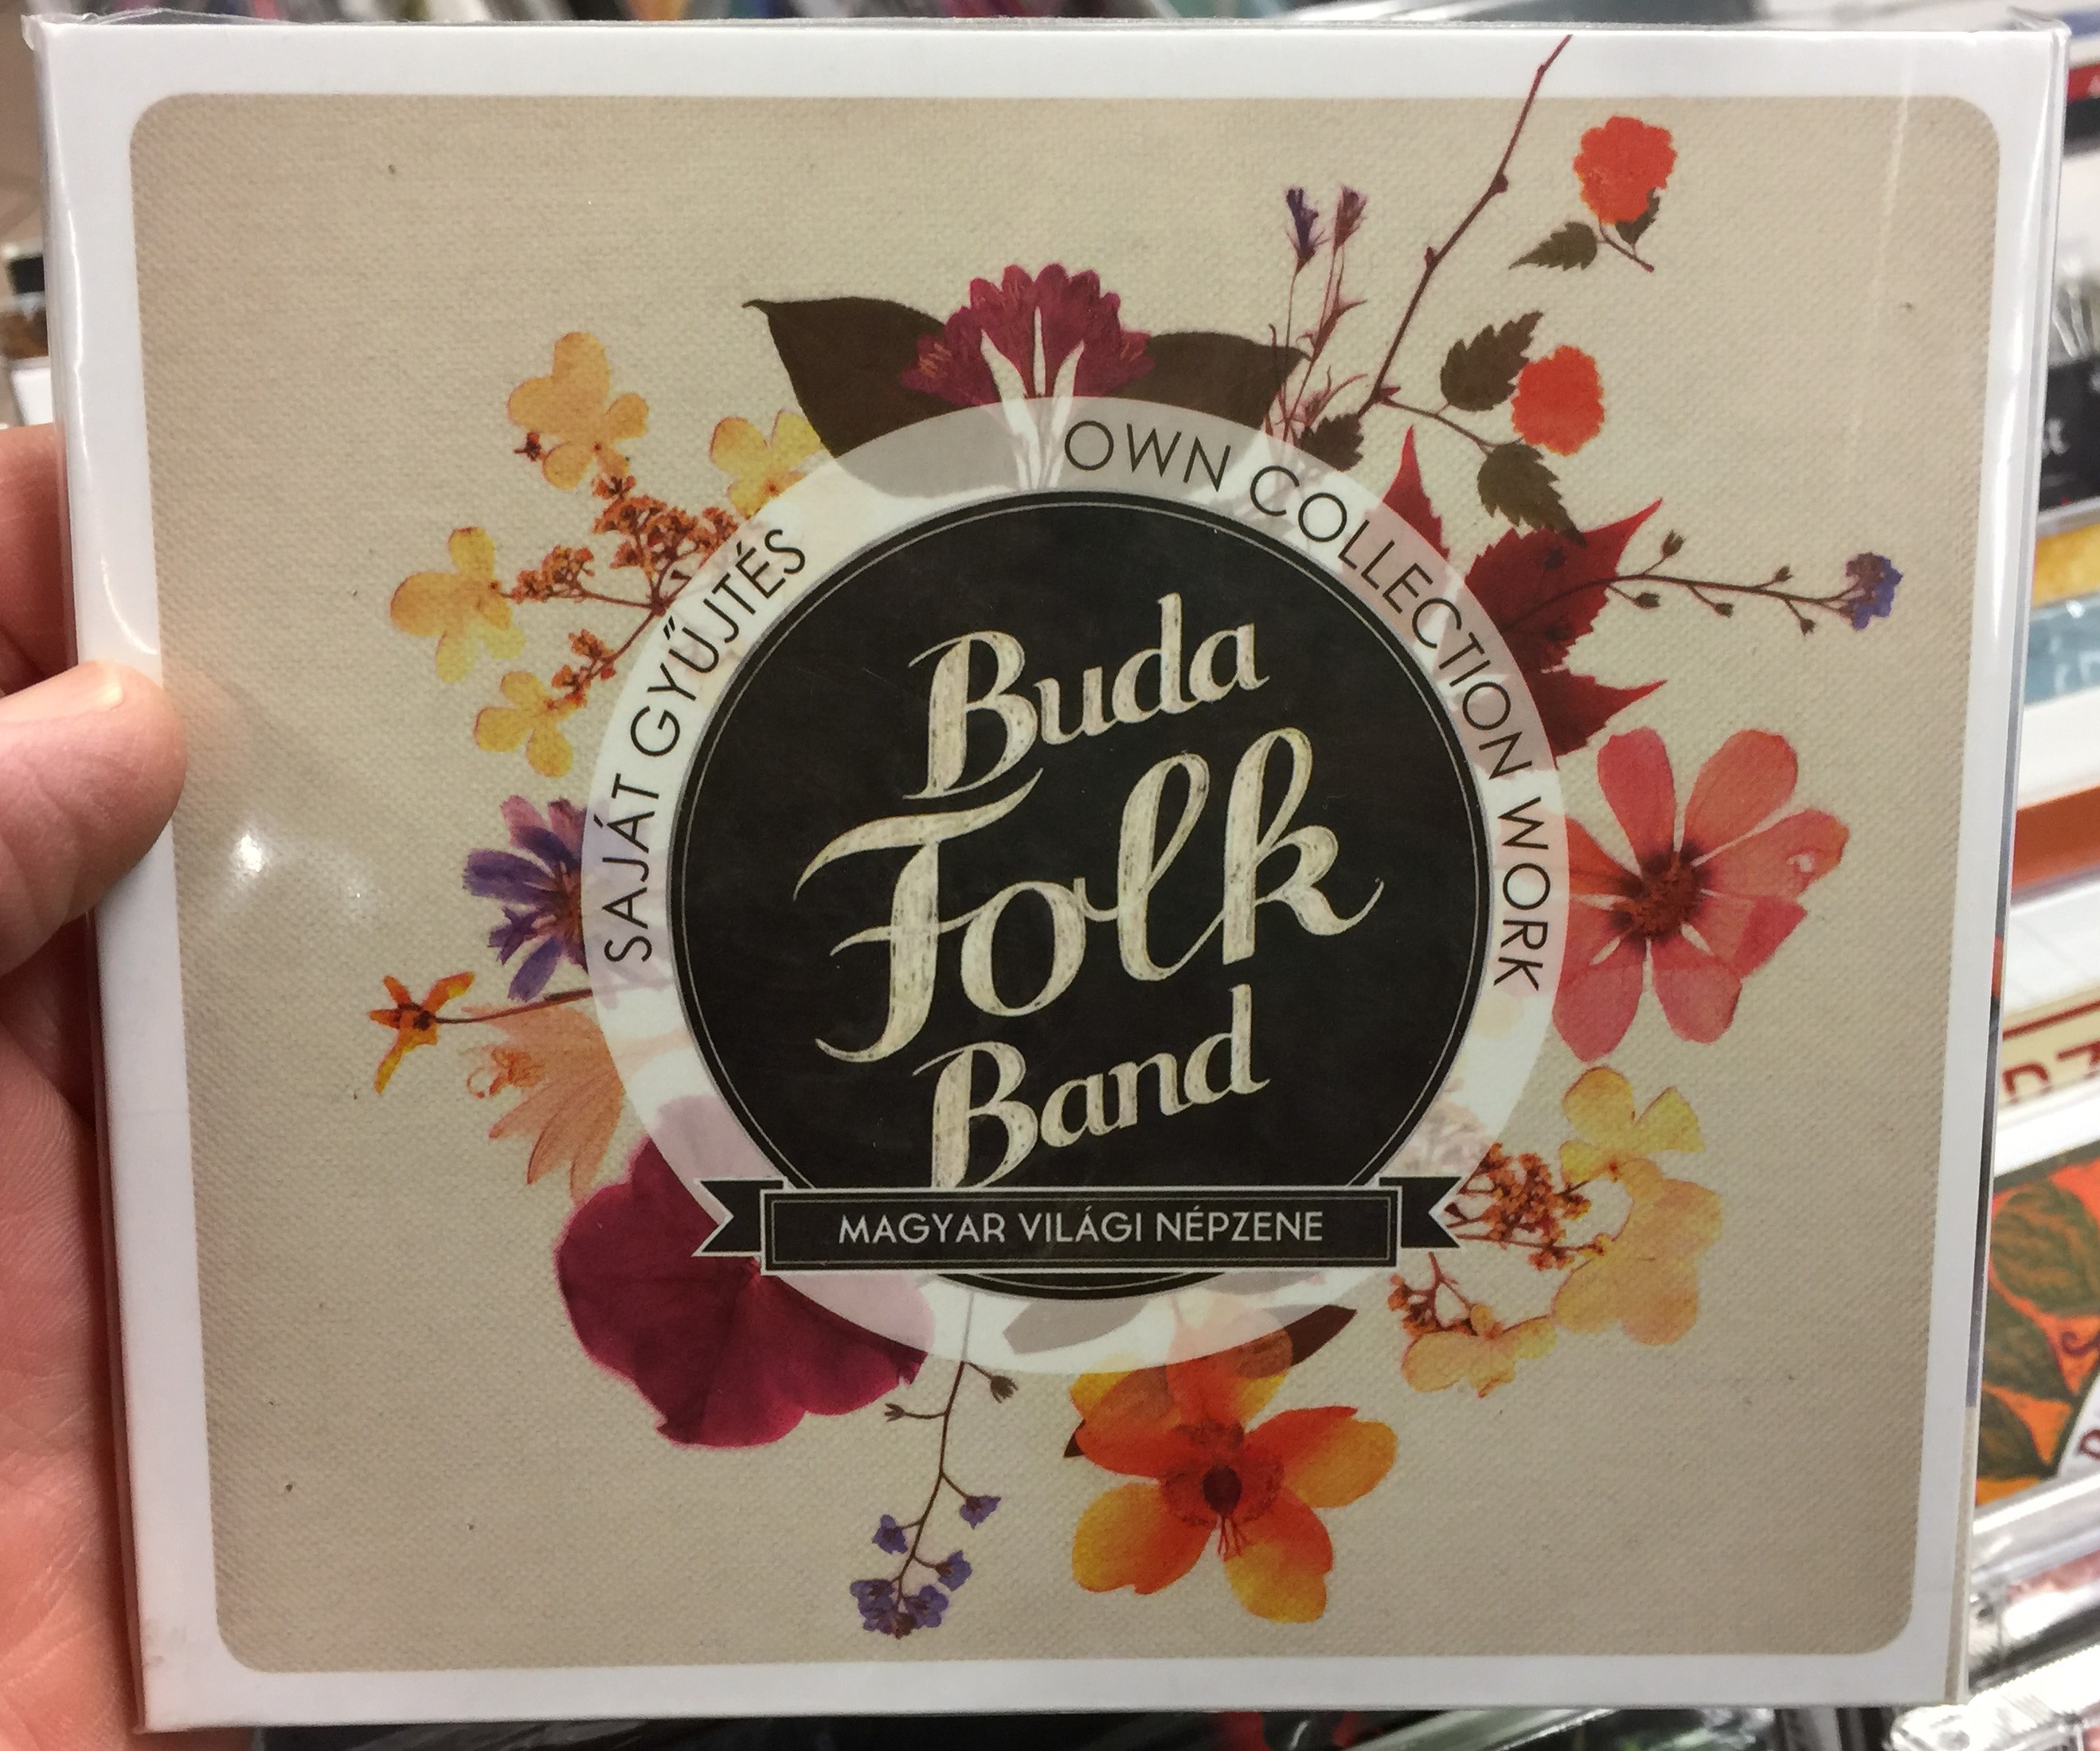 buda-folk-band-saj-t-gy-jt-s-own-collection-work-magyar-vilagi-nepzene-fon-budai-zeneh-z-audio-cd-2015-fa-370-2-1-.jpg